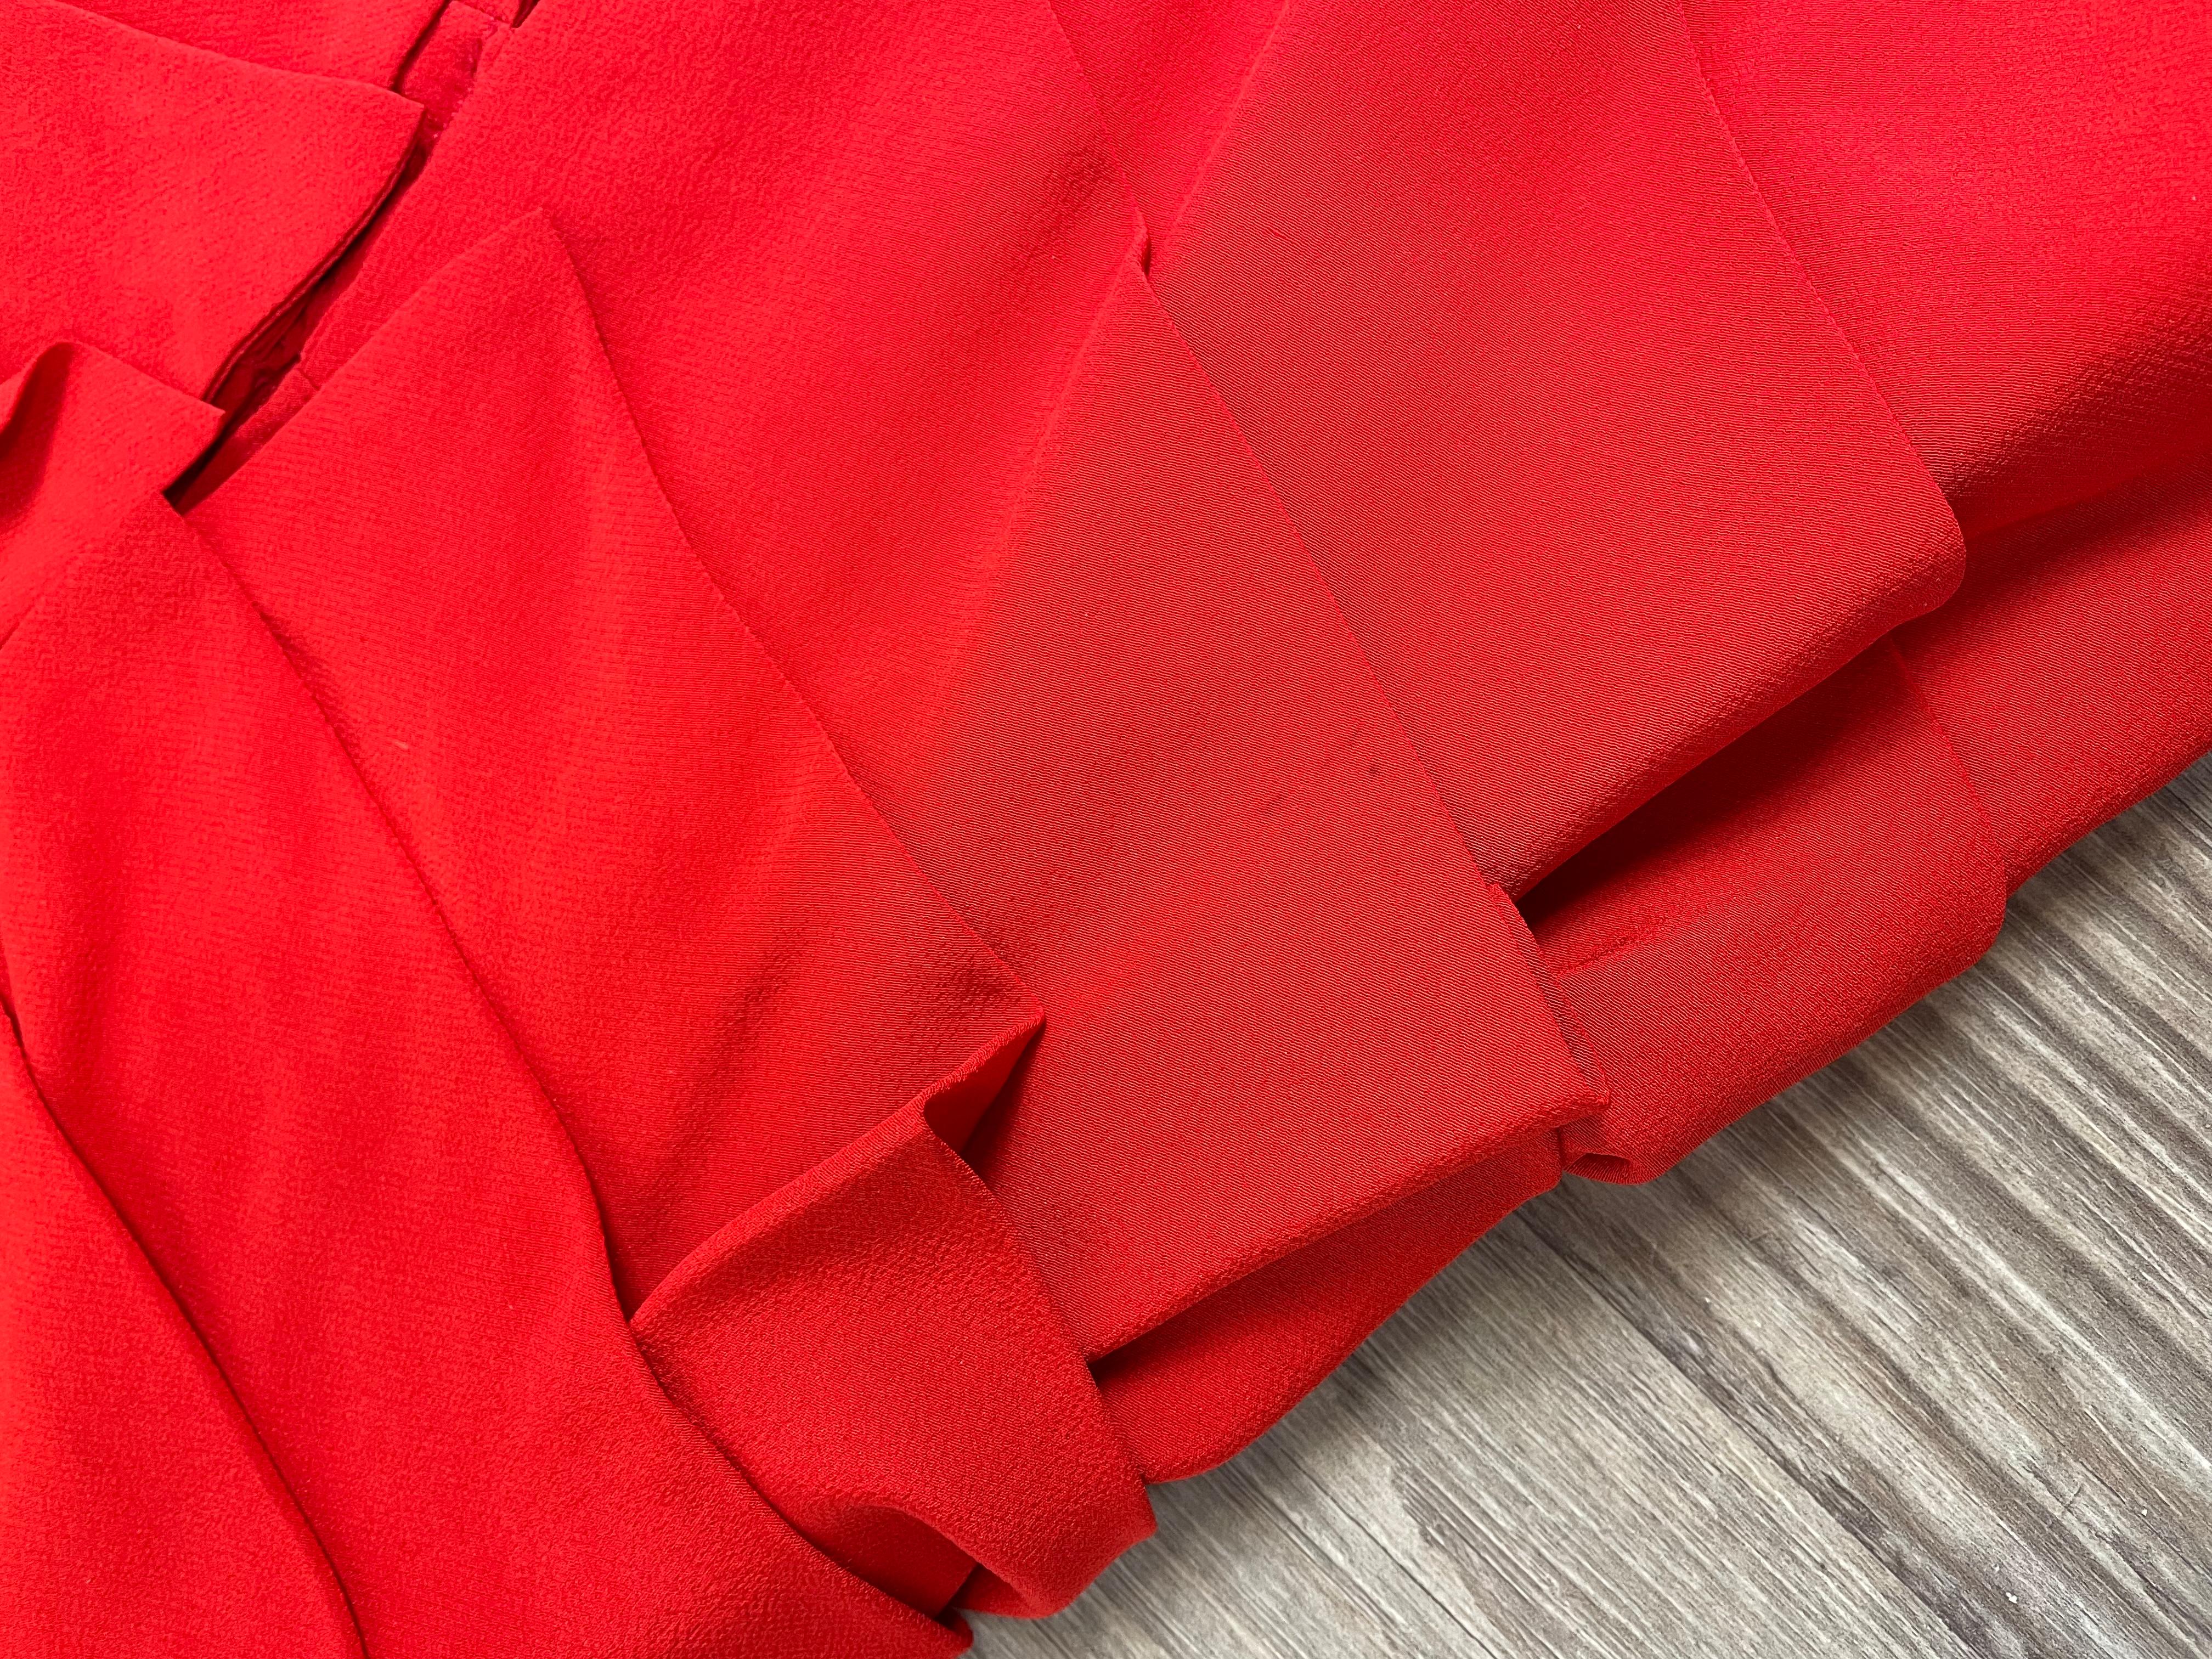 Women's Gianni Versace Sera 1987-88 red dress